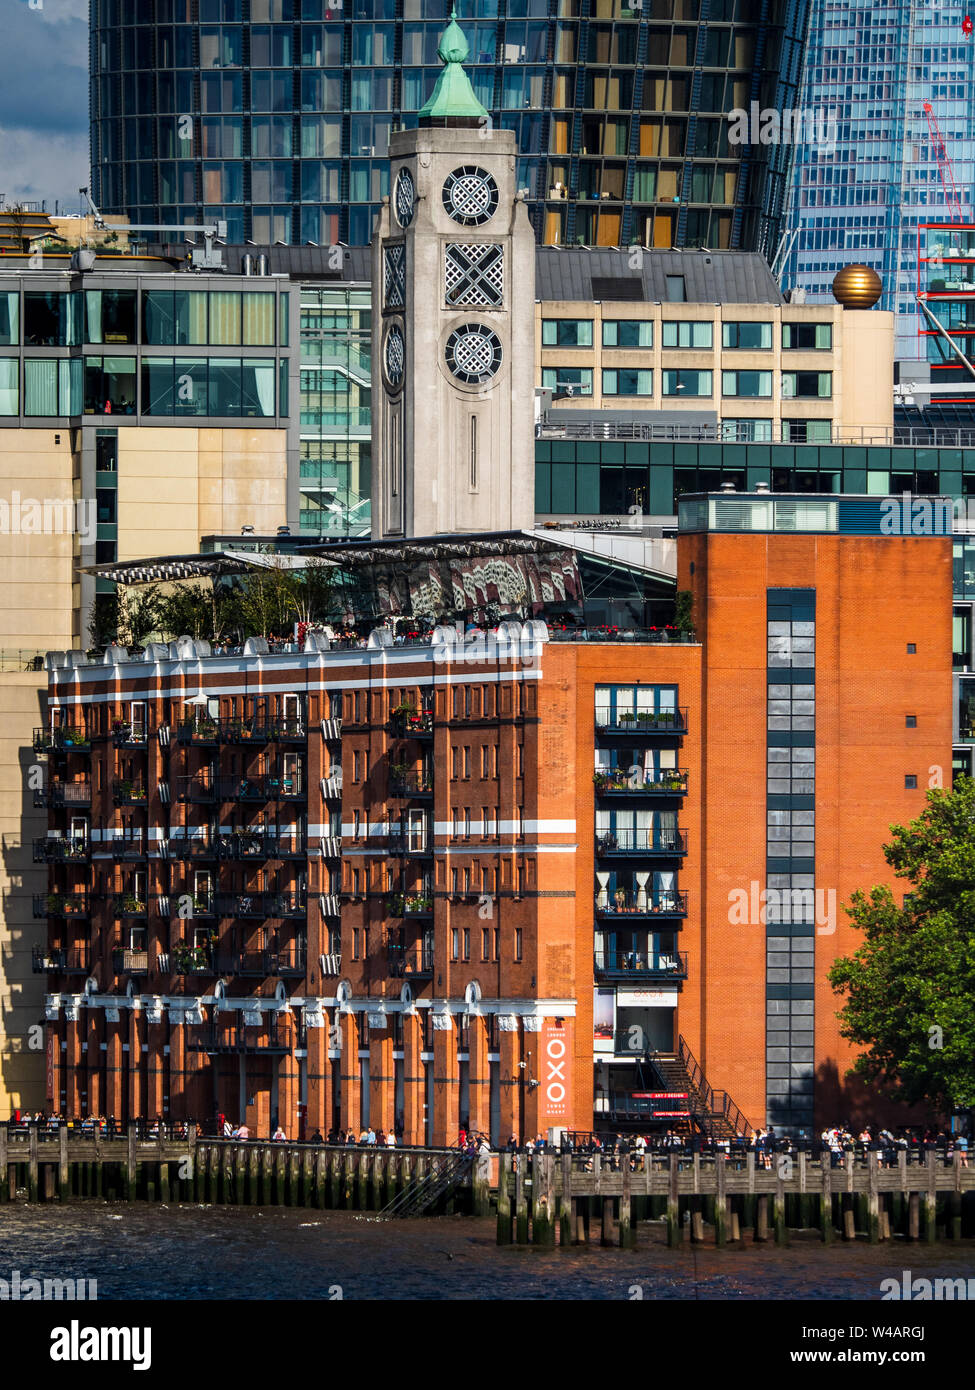 Oxo Tower Londres. Initialement construit comme une centrale électrique à la fin du xixe siècle il a été remanié en style Art déco par l'architecte Albert Moore entre 1928-1929. Banque D'Images